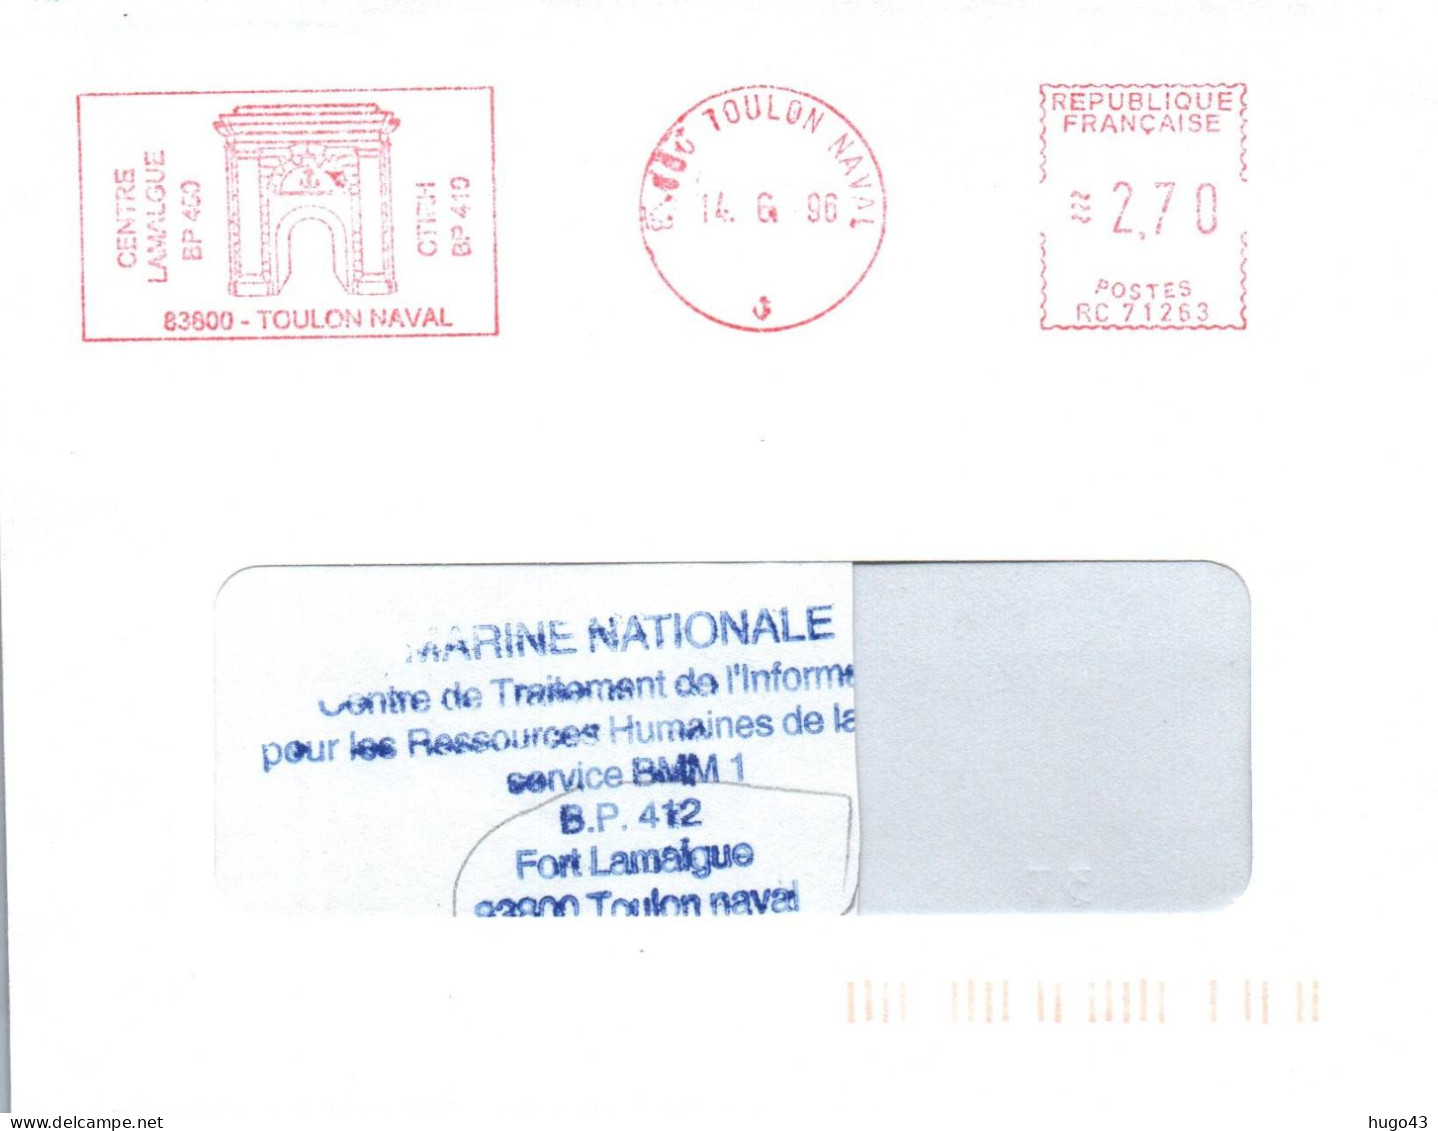 ENVELOPPE AVEC FLAMME E.M.A - CENTRE LAMALGUE - TOULON NAVAL - LE 14/6/96 - Seepost